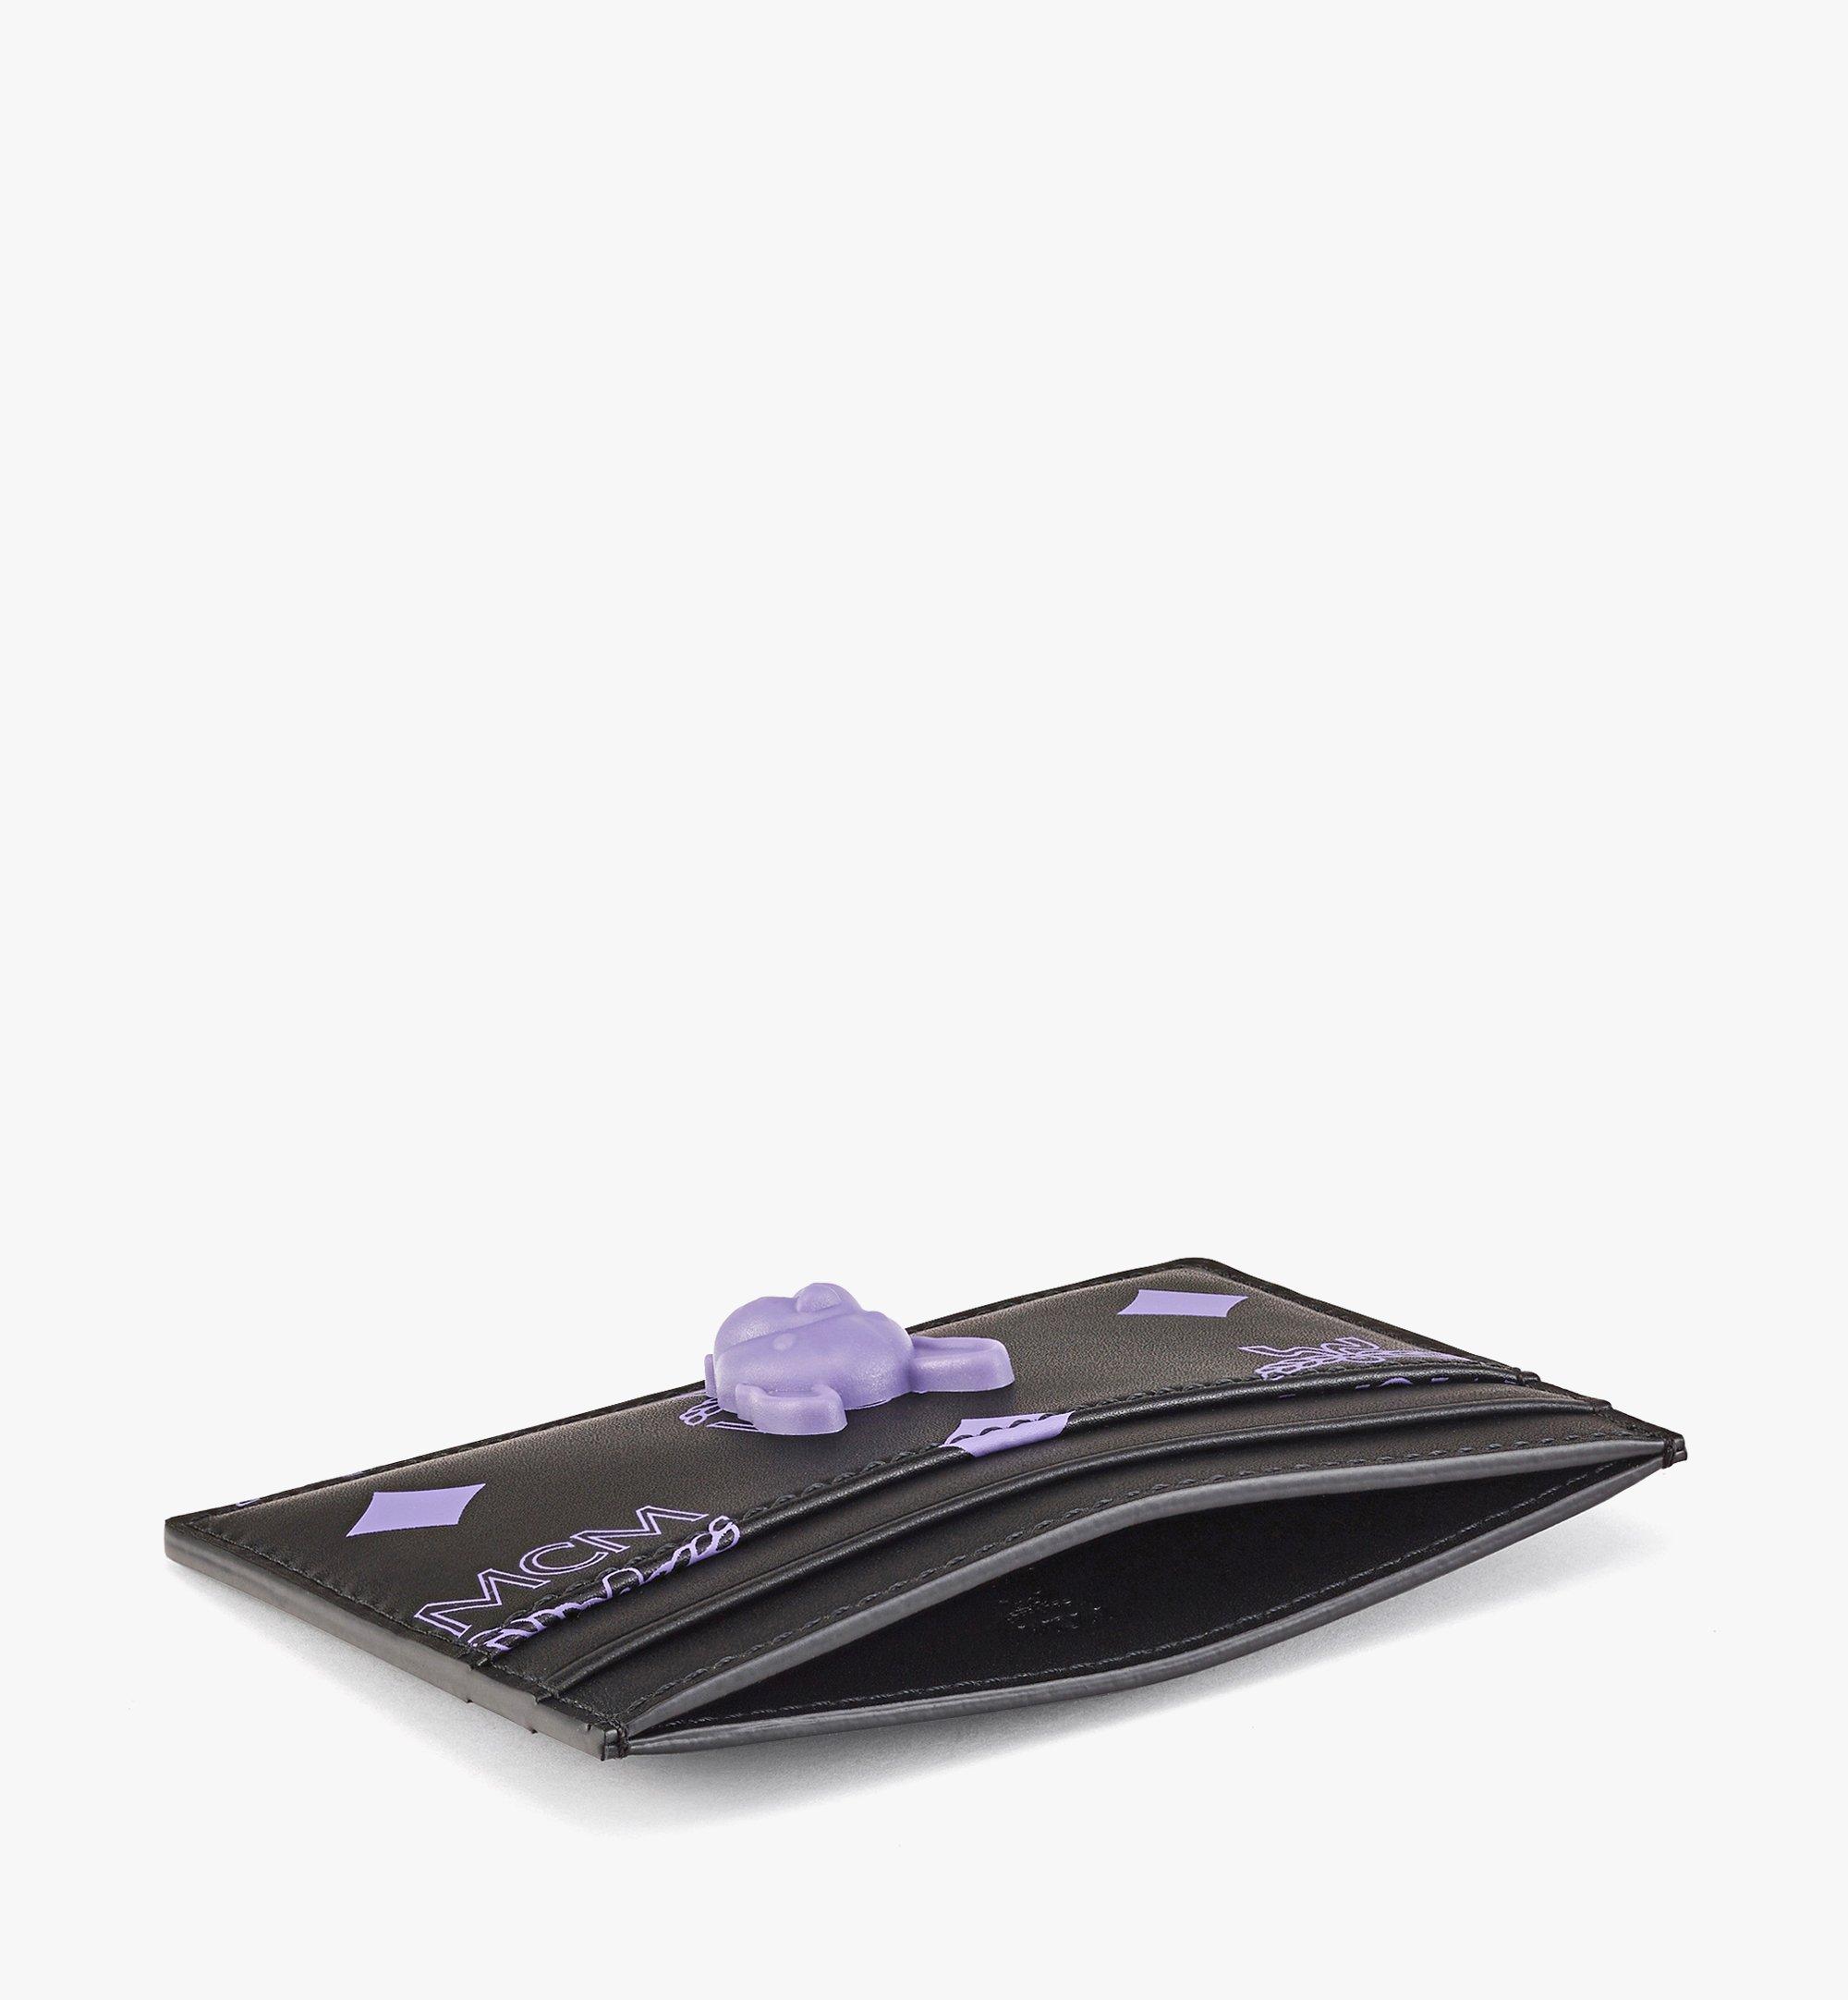 MCM M Pup Kartenetui aus Leder mit Color Splash Visetos Purple MXACSSX02U4001 Noch mehr sehen 1